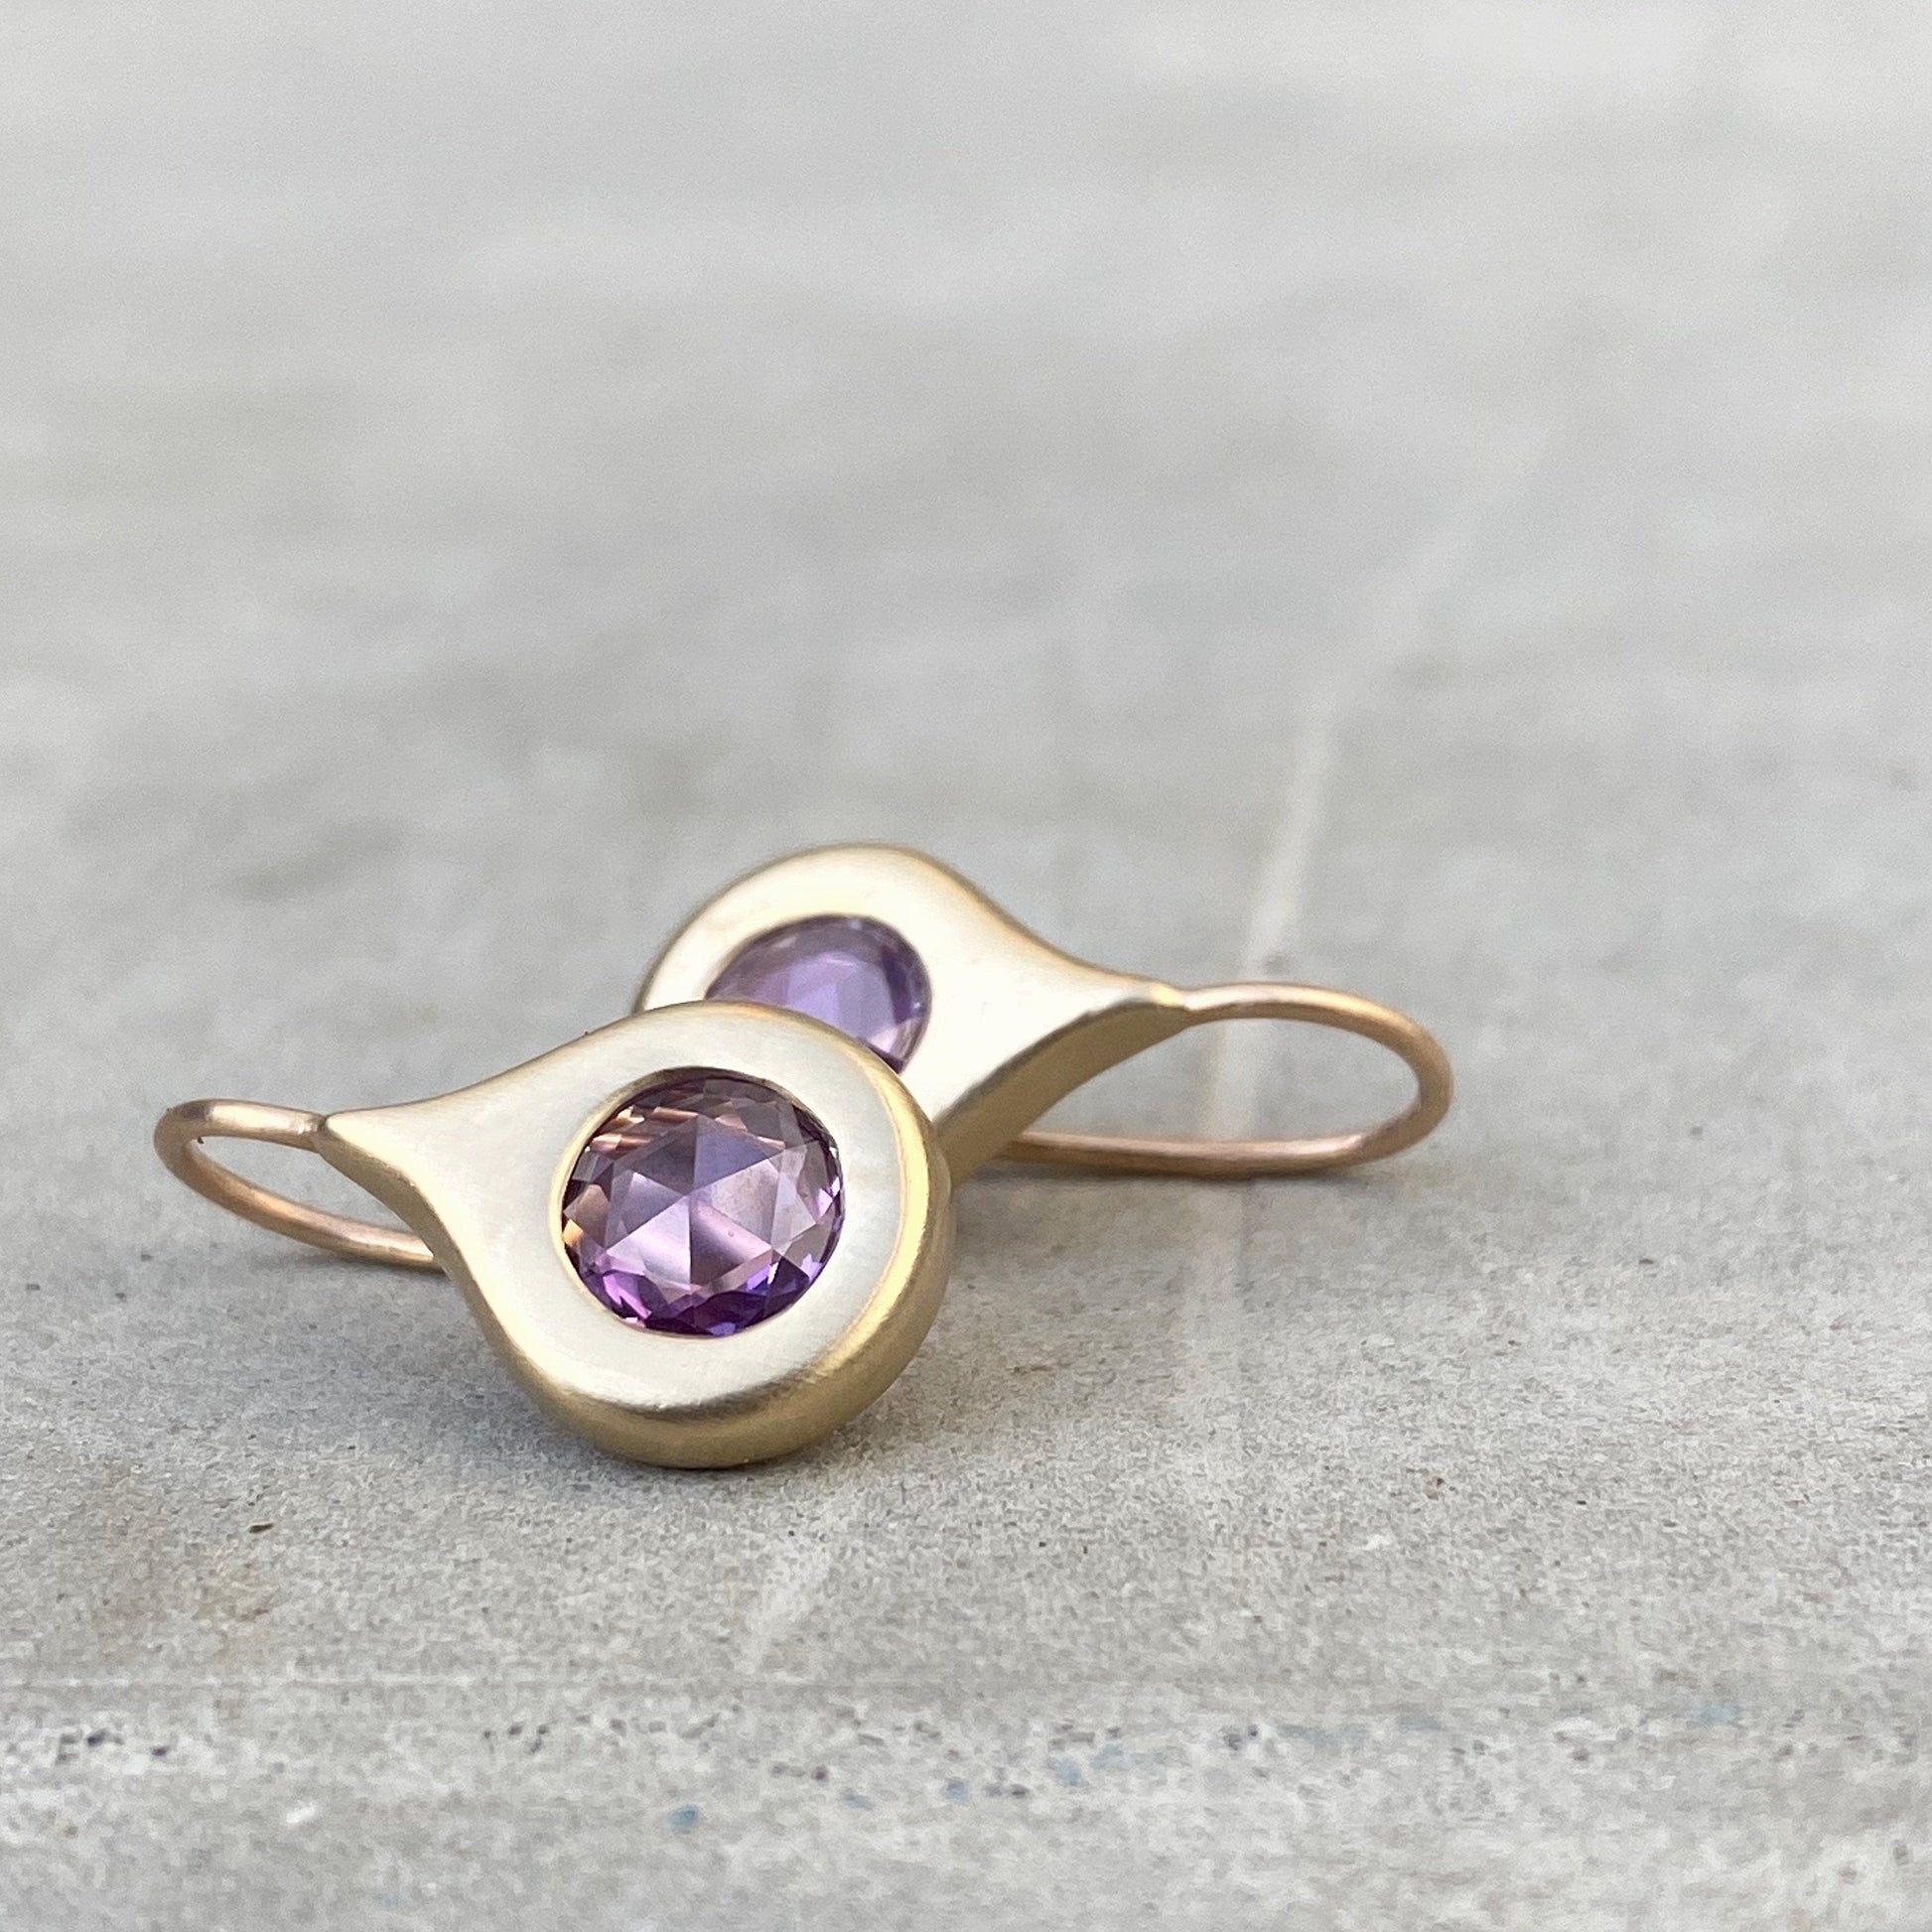 rose cut sapphire earrings by NIXIN Jewlery